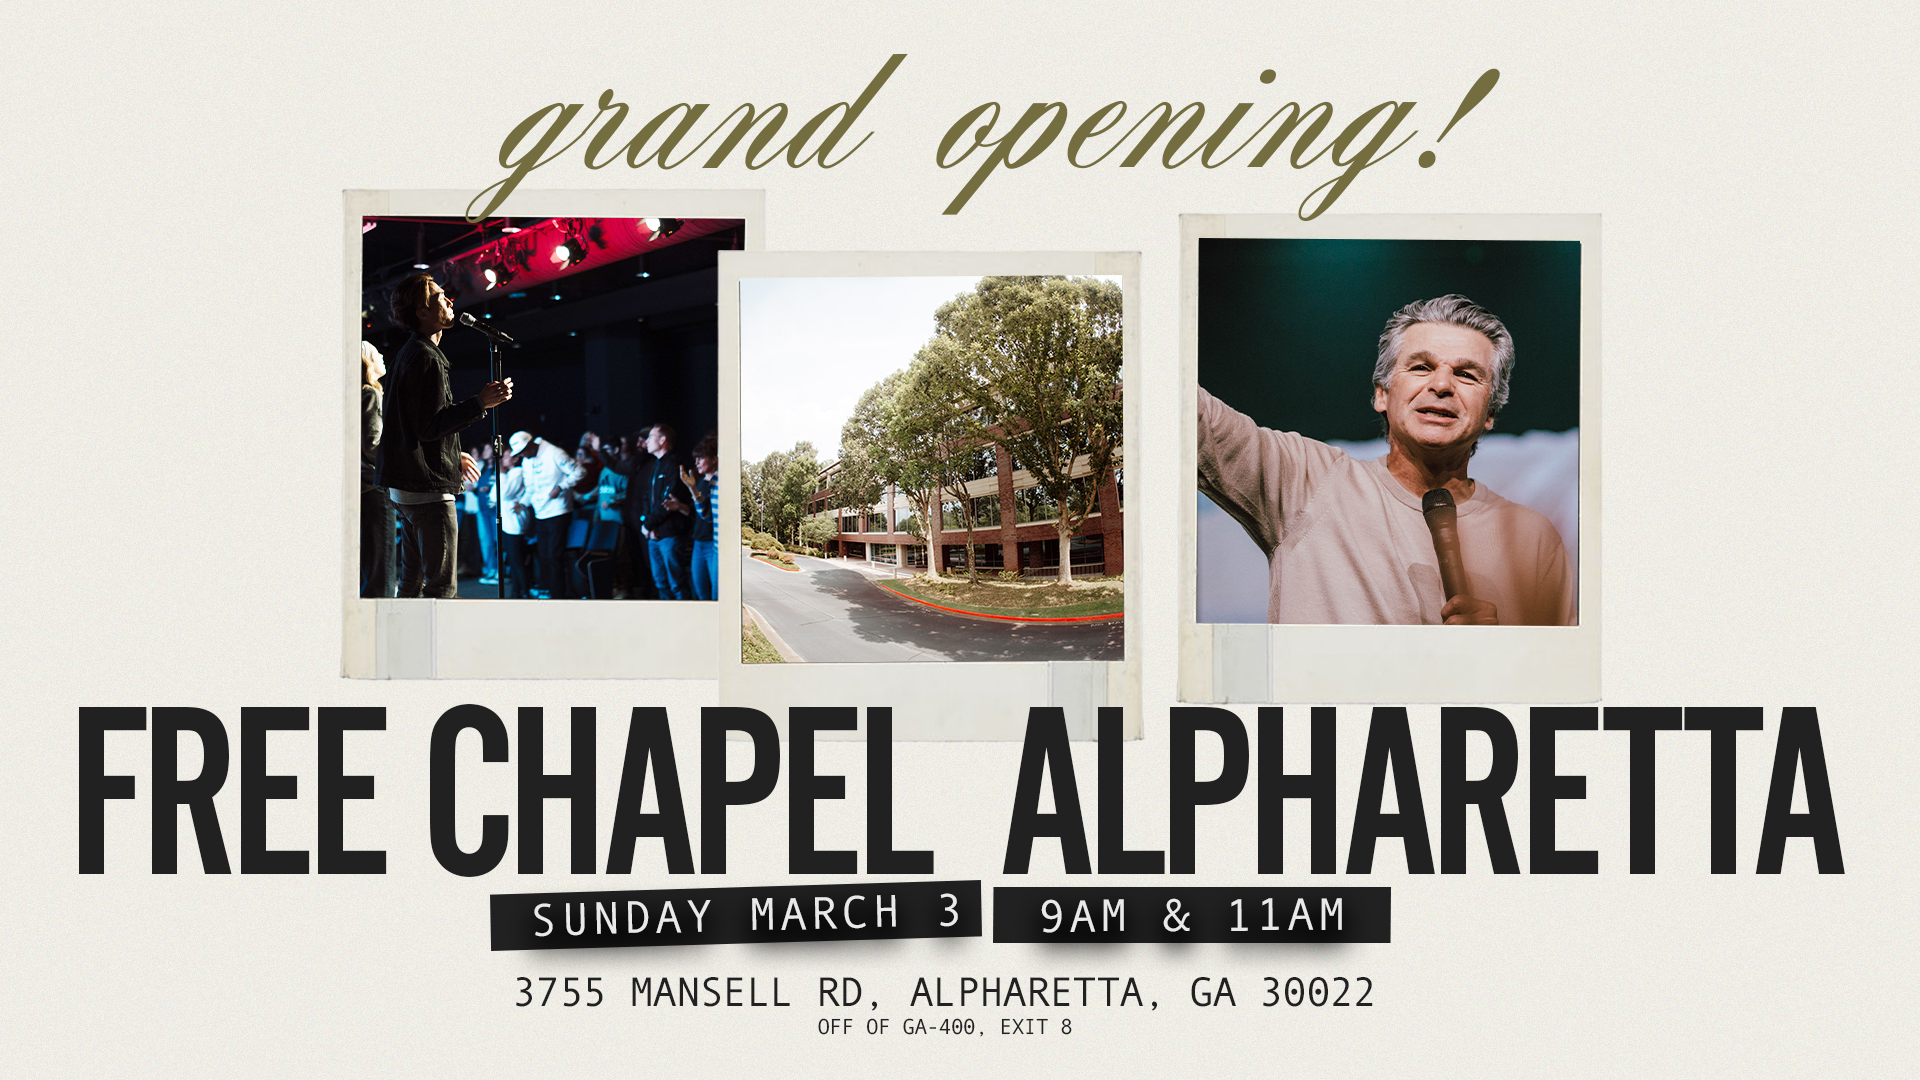 Grand Opening: Alpharetta Campus at the Alpharetta campus